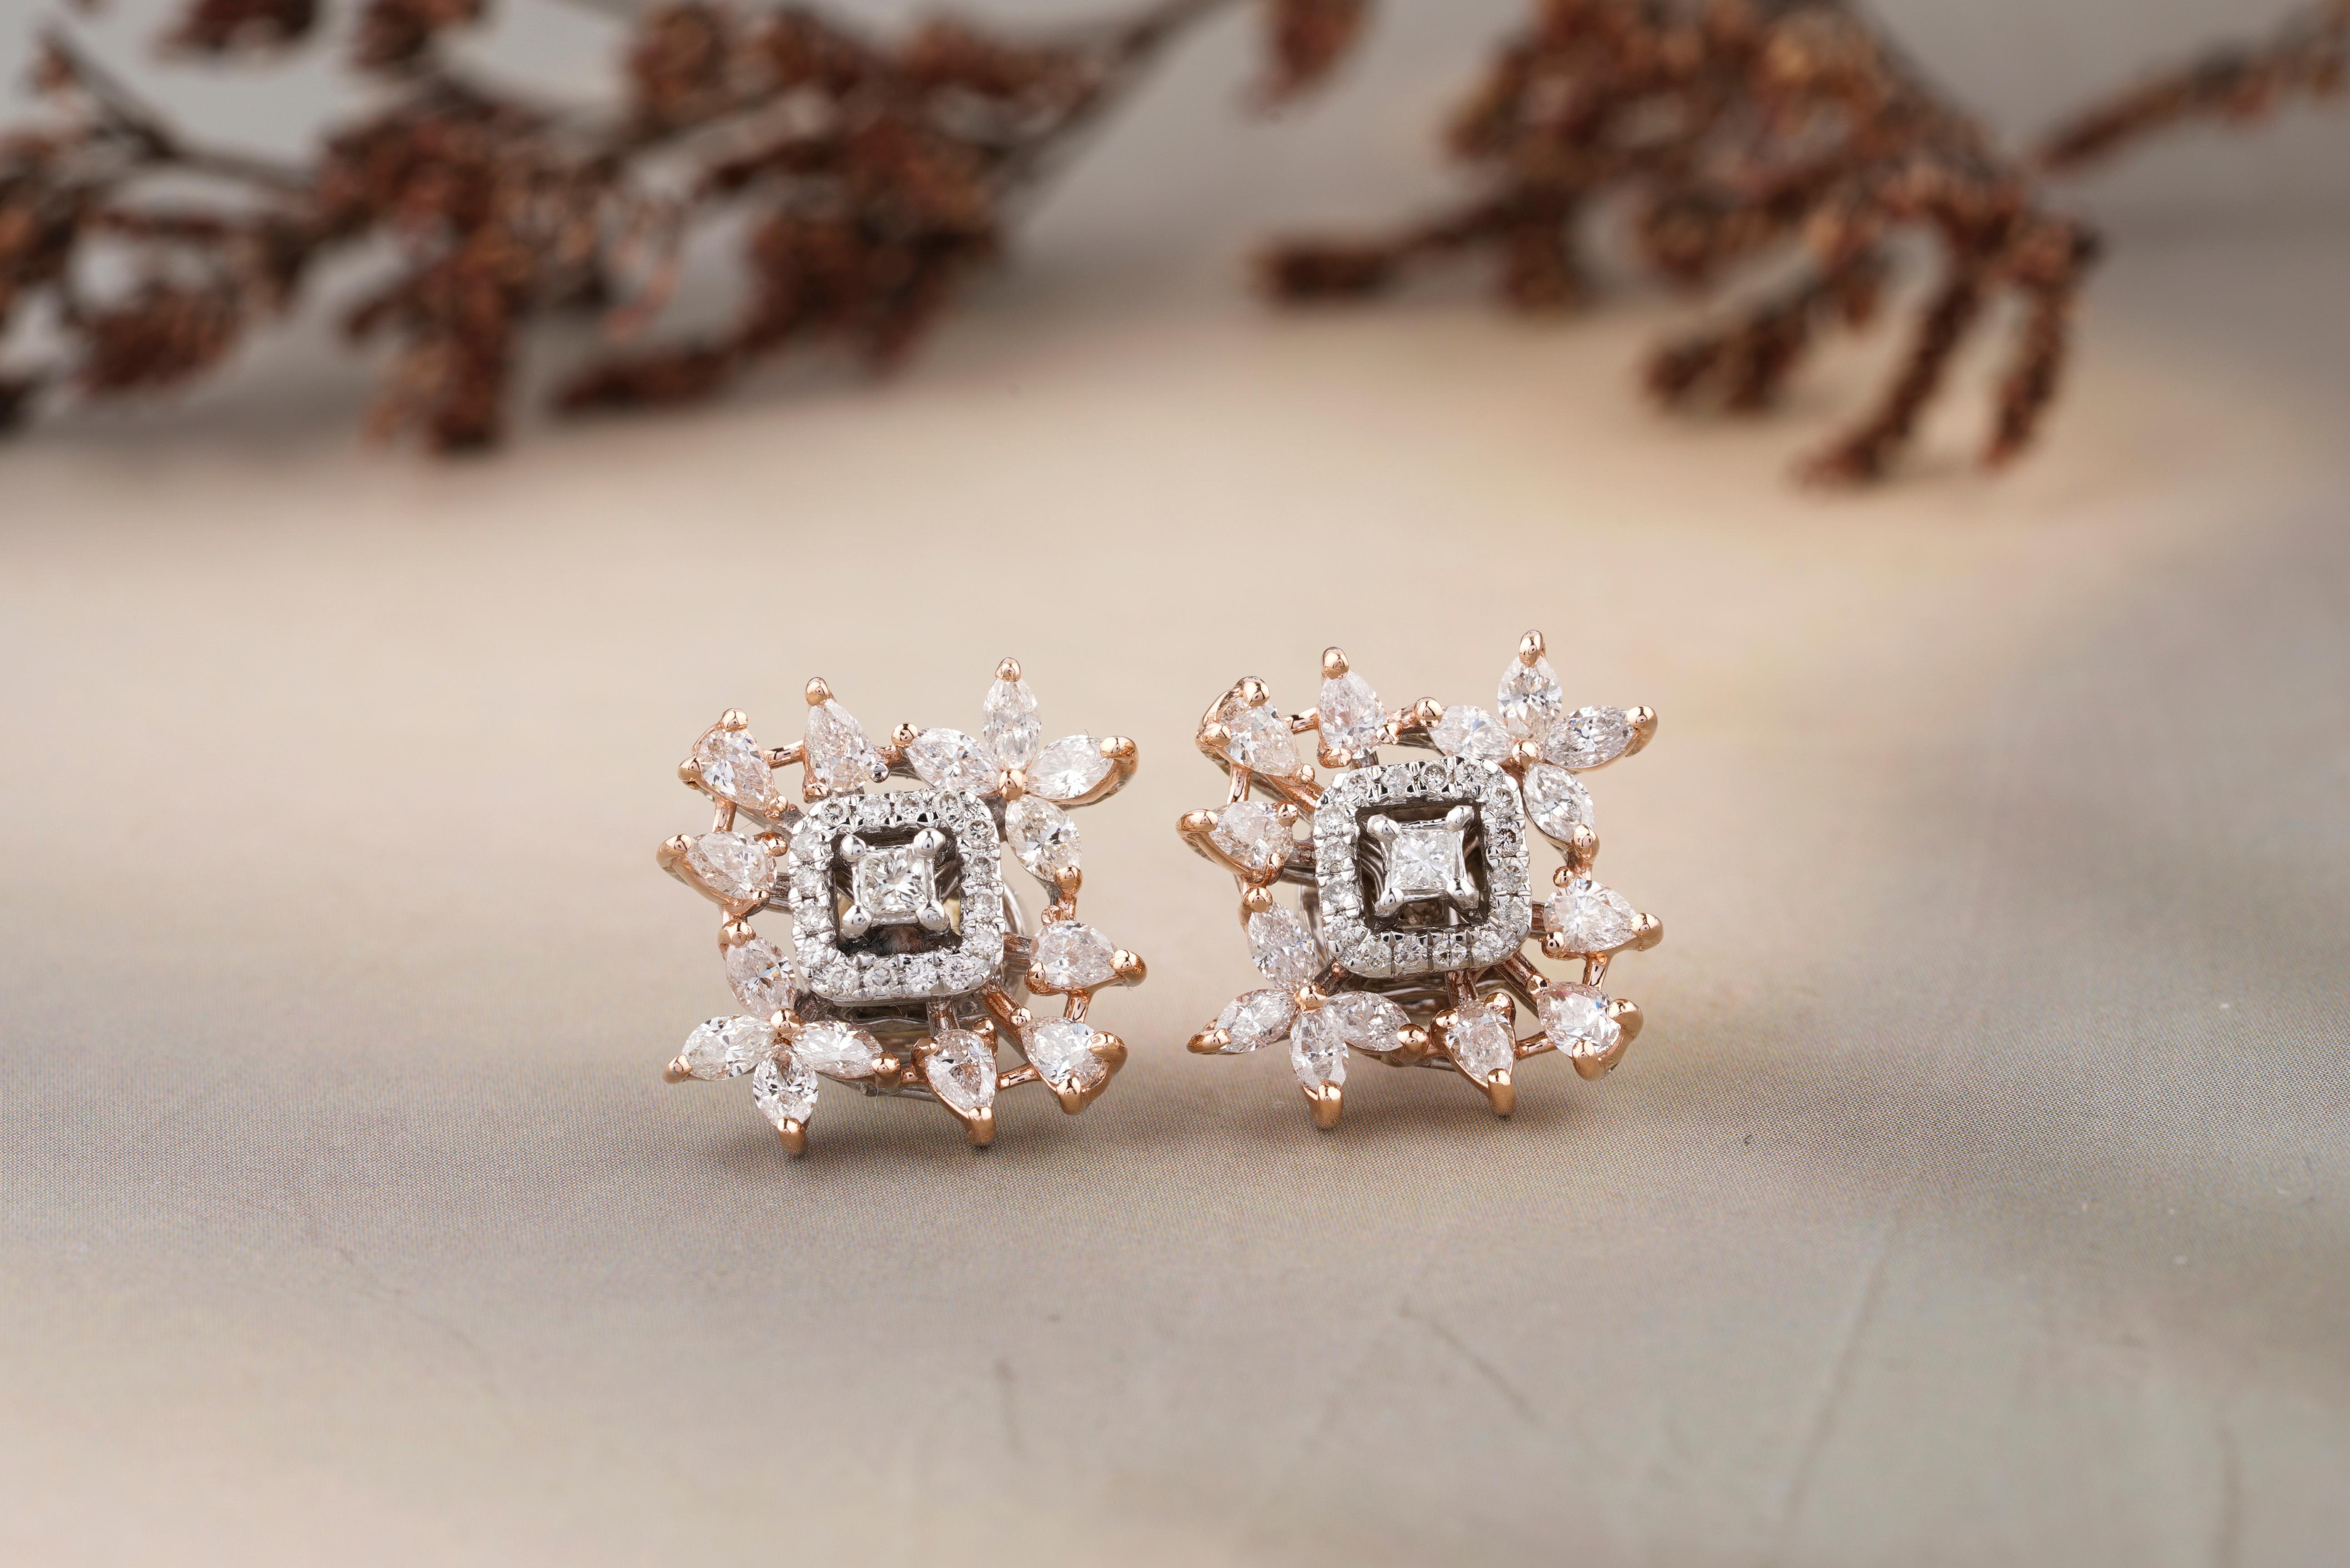 Les boucles d'oreilles en diamant fantaisie Leaflet Design/One présentent un diamant central de taille carrée (princesse) entouré d'un halo de diamants plus petits de taille ronde. Ce motif central est rehaussé d'un arrangement de diamants taillés